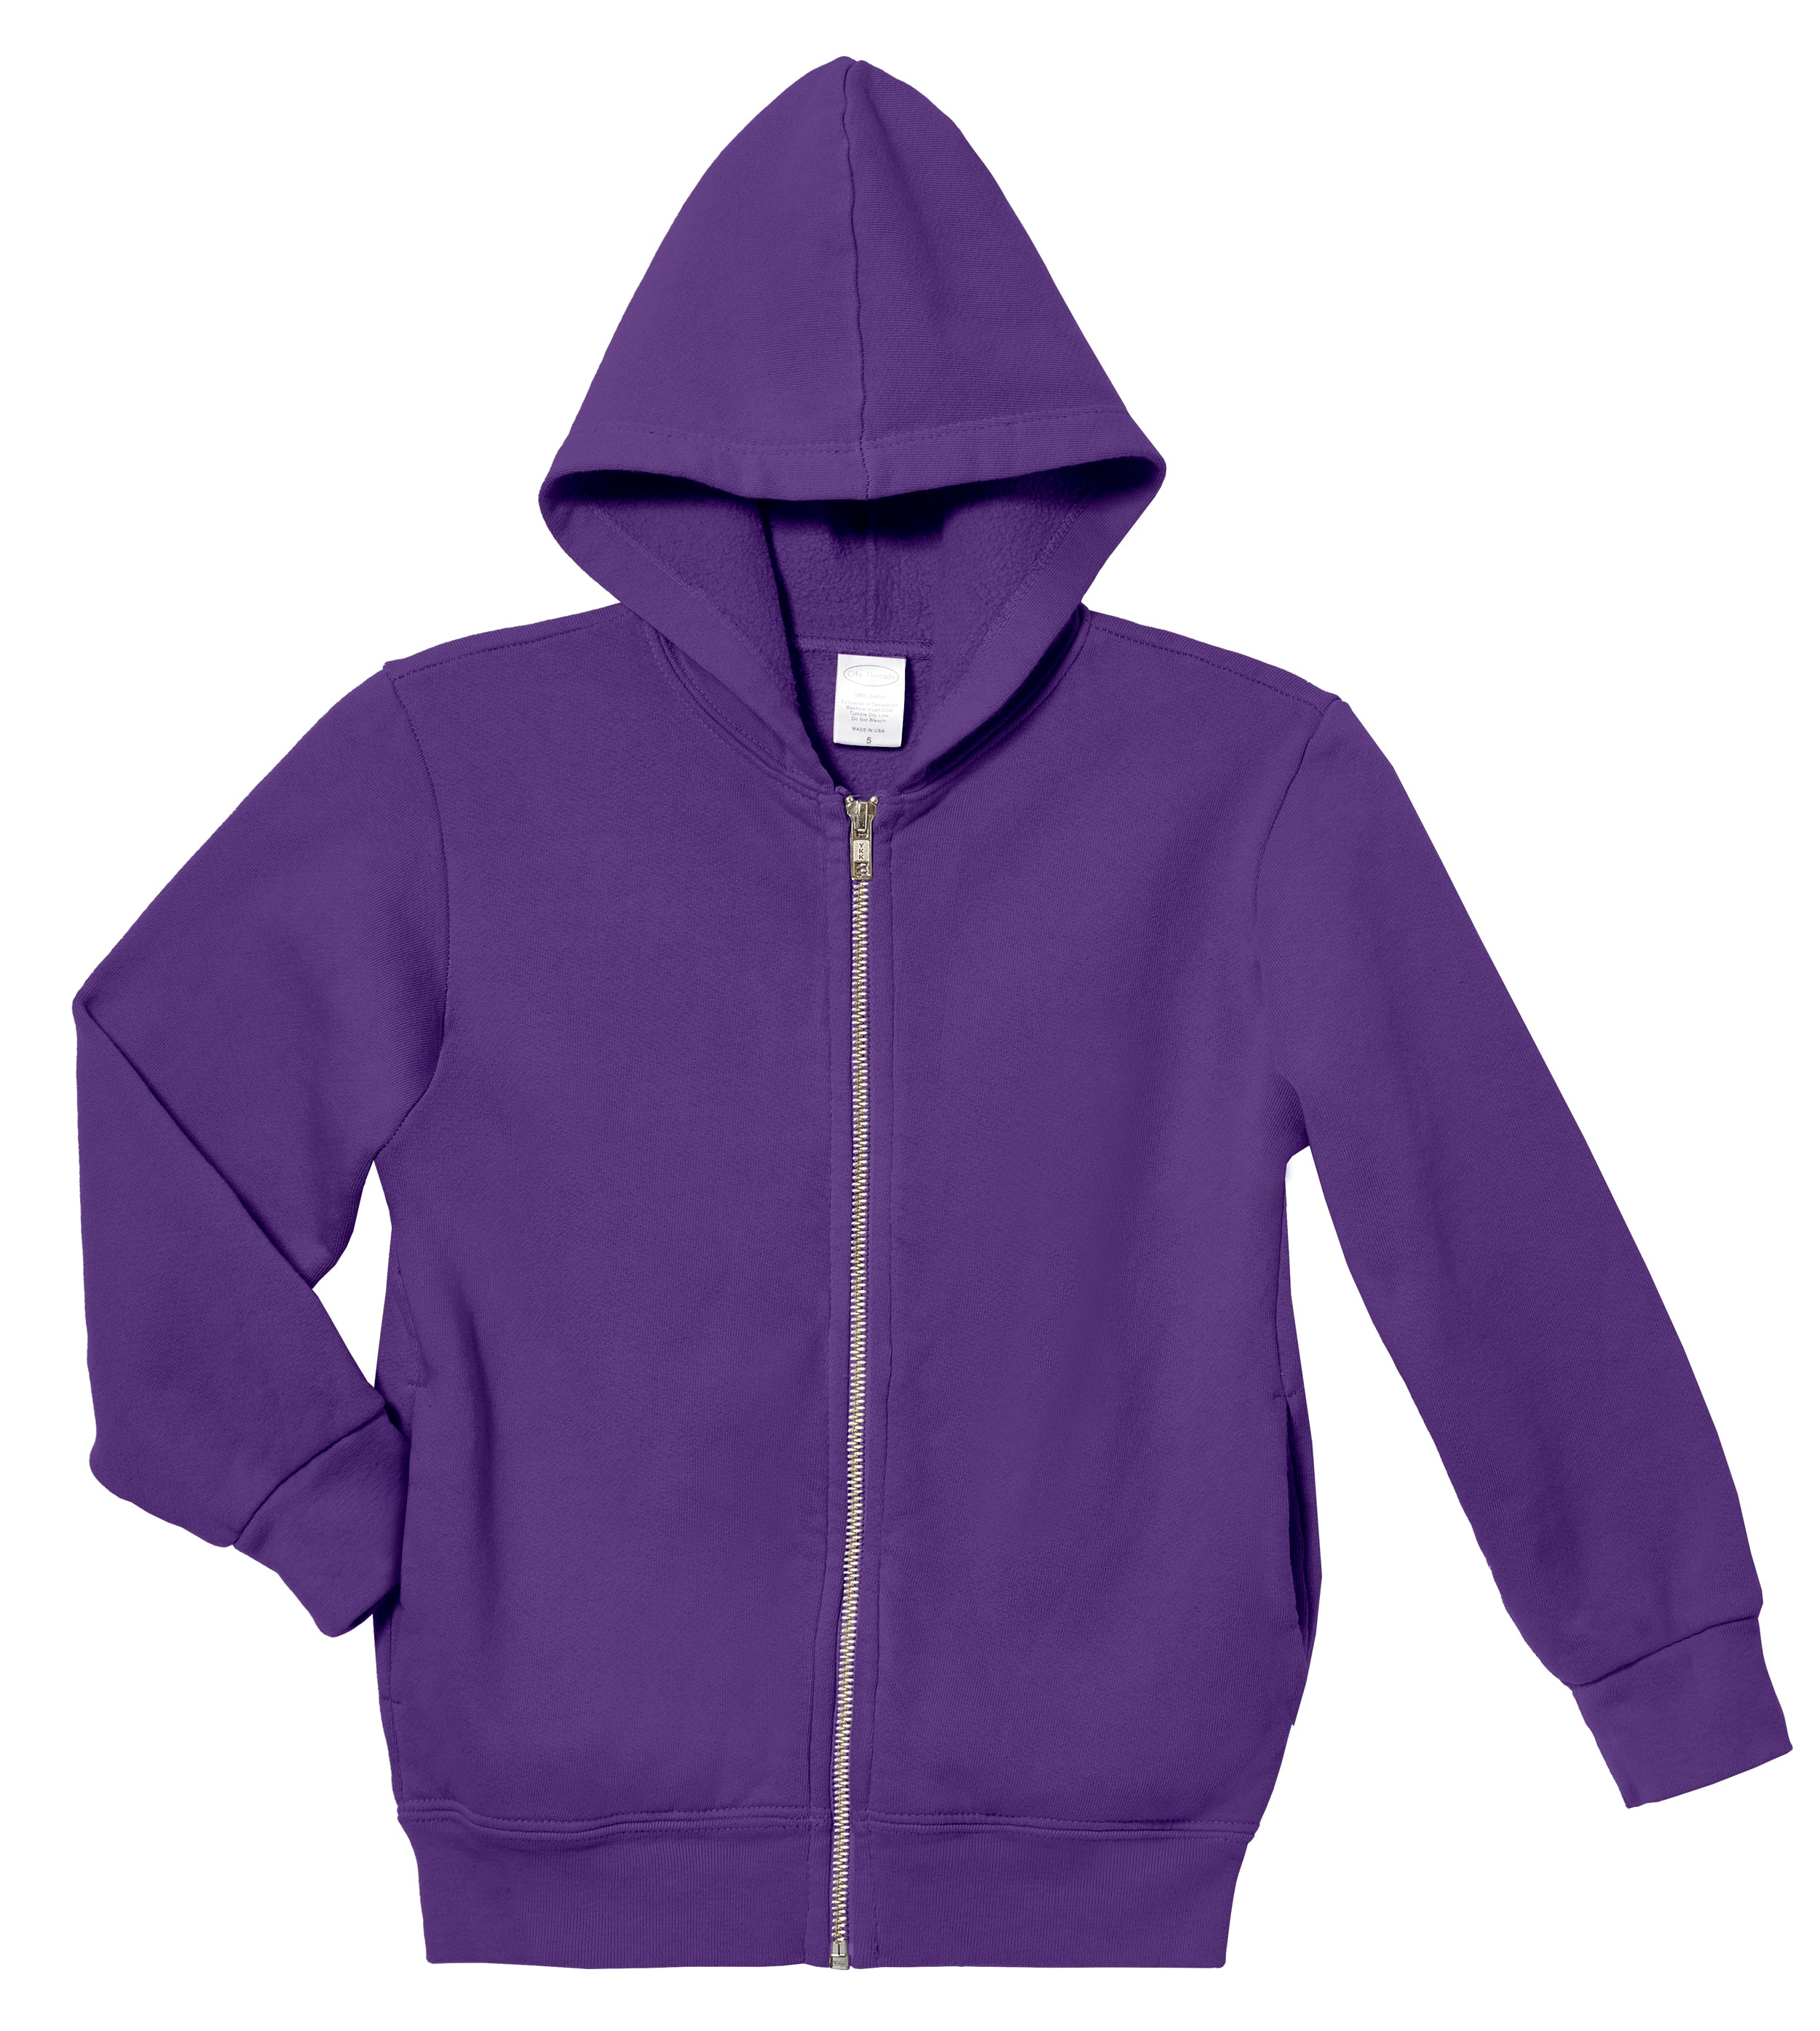 Soft & Cozy 100% Cotton Fleece Zip Hoodie with Inner Pockets | Purple